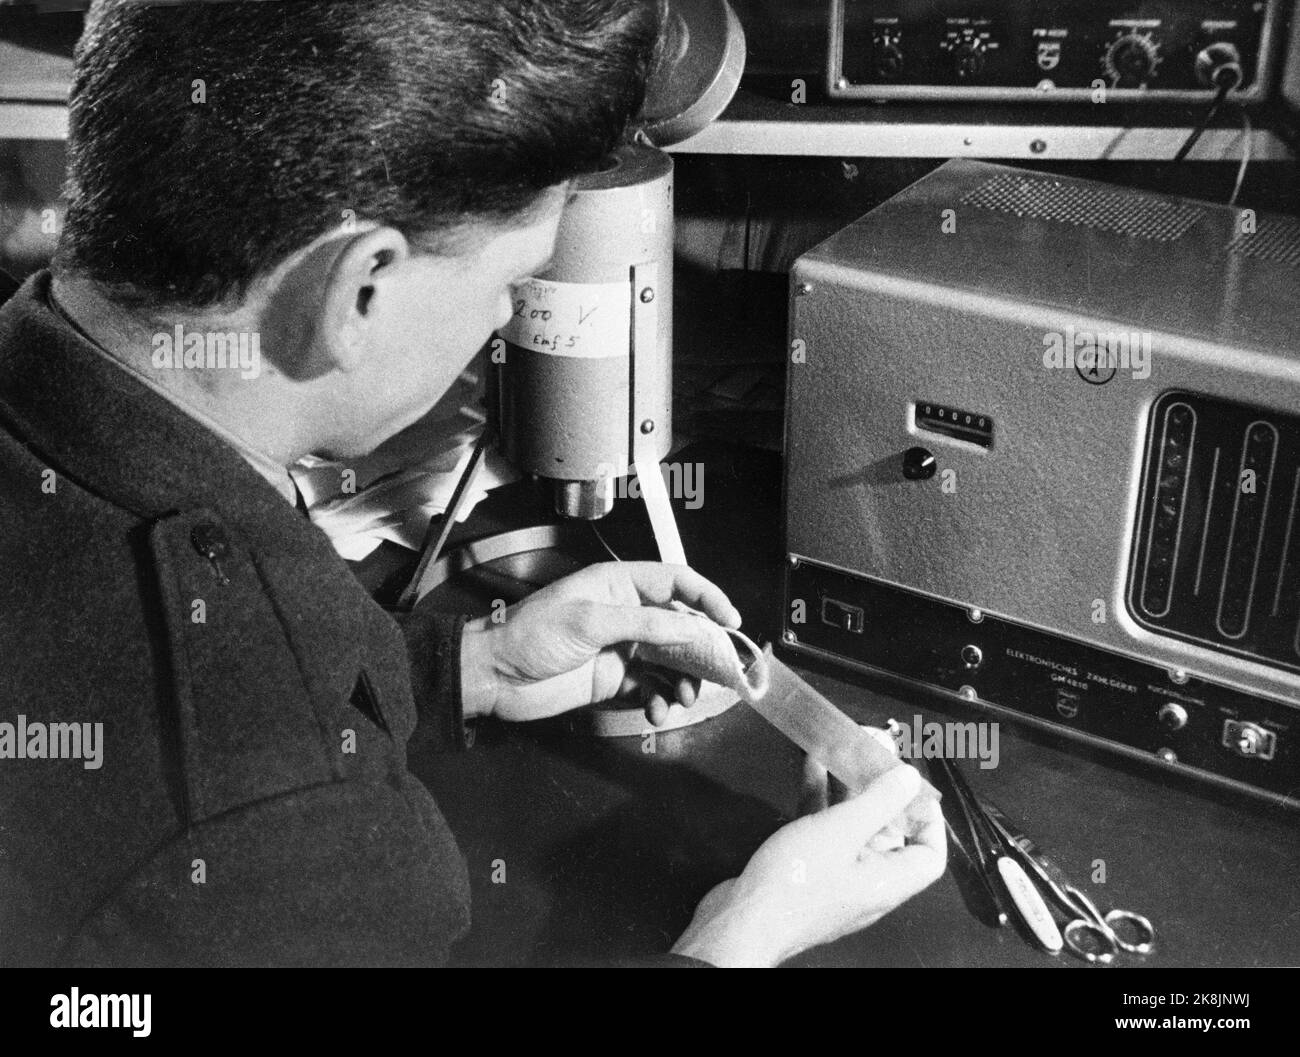 Keller 19610905 Arbeiten zur Messung radioaktiver Fallouts in Norwegen nach Testexplosionen von Atombomben in der Sowjetunion: Eine mit Flugzeugen heruntergebrachte Filterprobe wird mit einem Intensitätsmesser an der Messstation des Defense Research Institute in Kjeller analysiert. Foto: NTB Archive / NTB Stockfoto